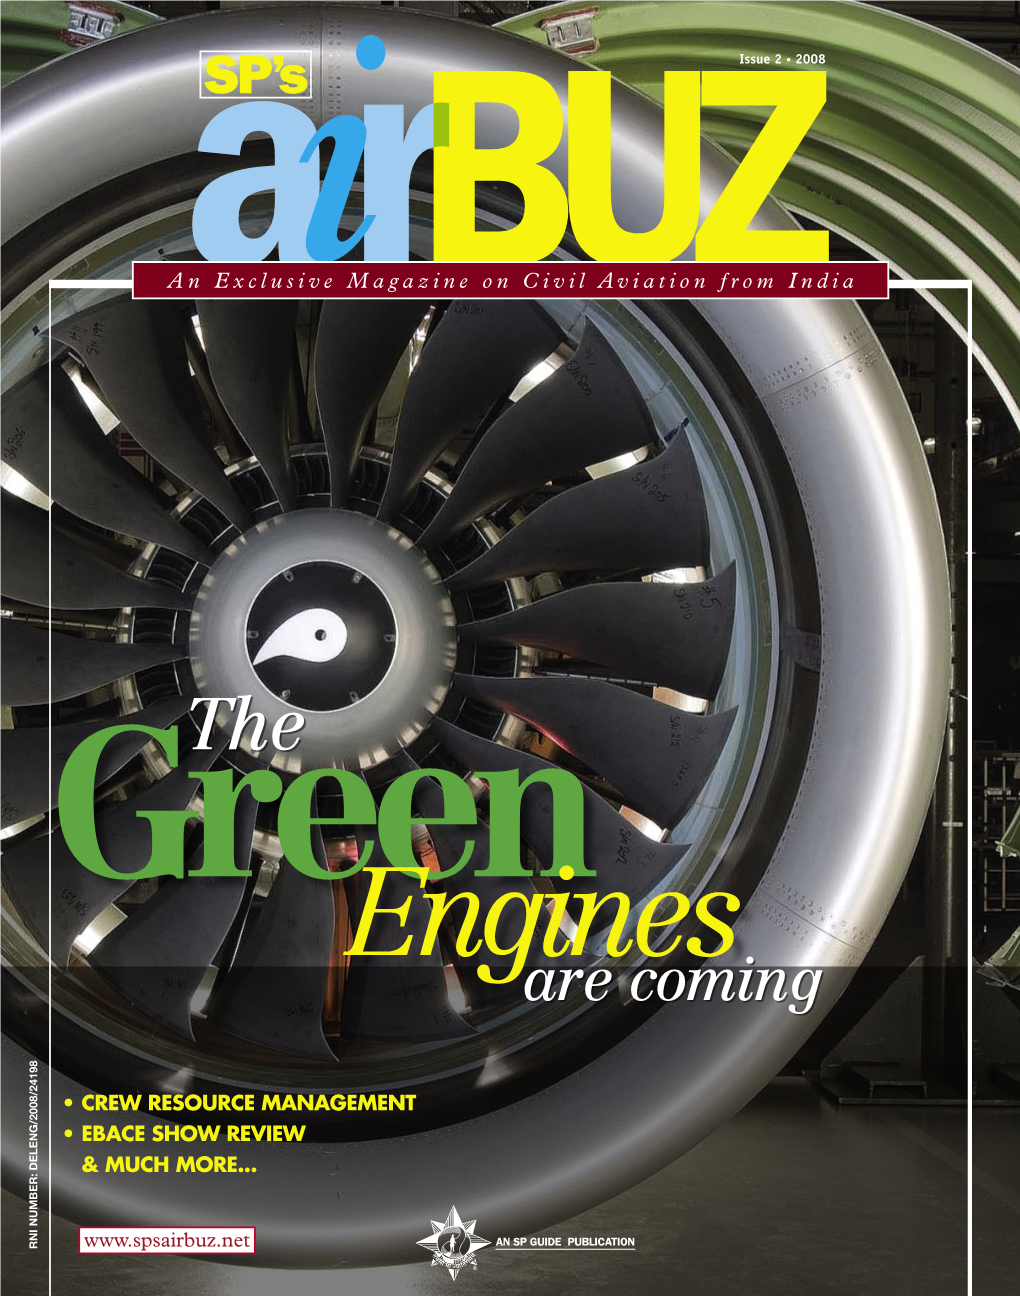 SP's Airbuz Magazine